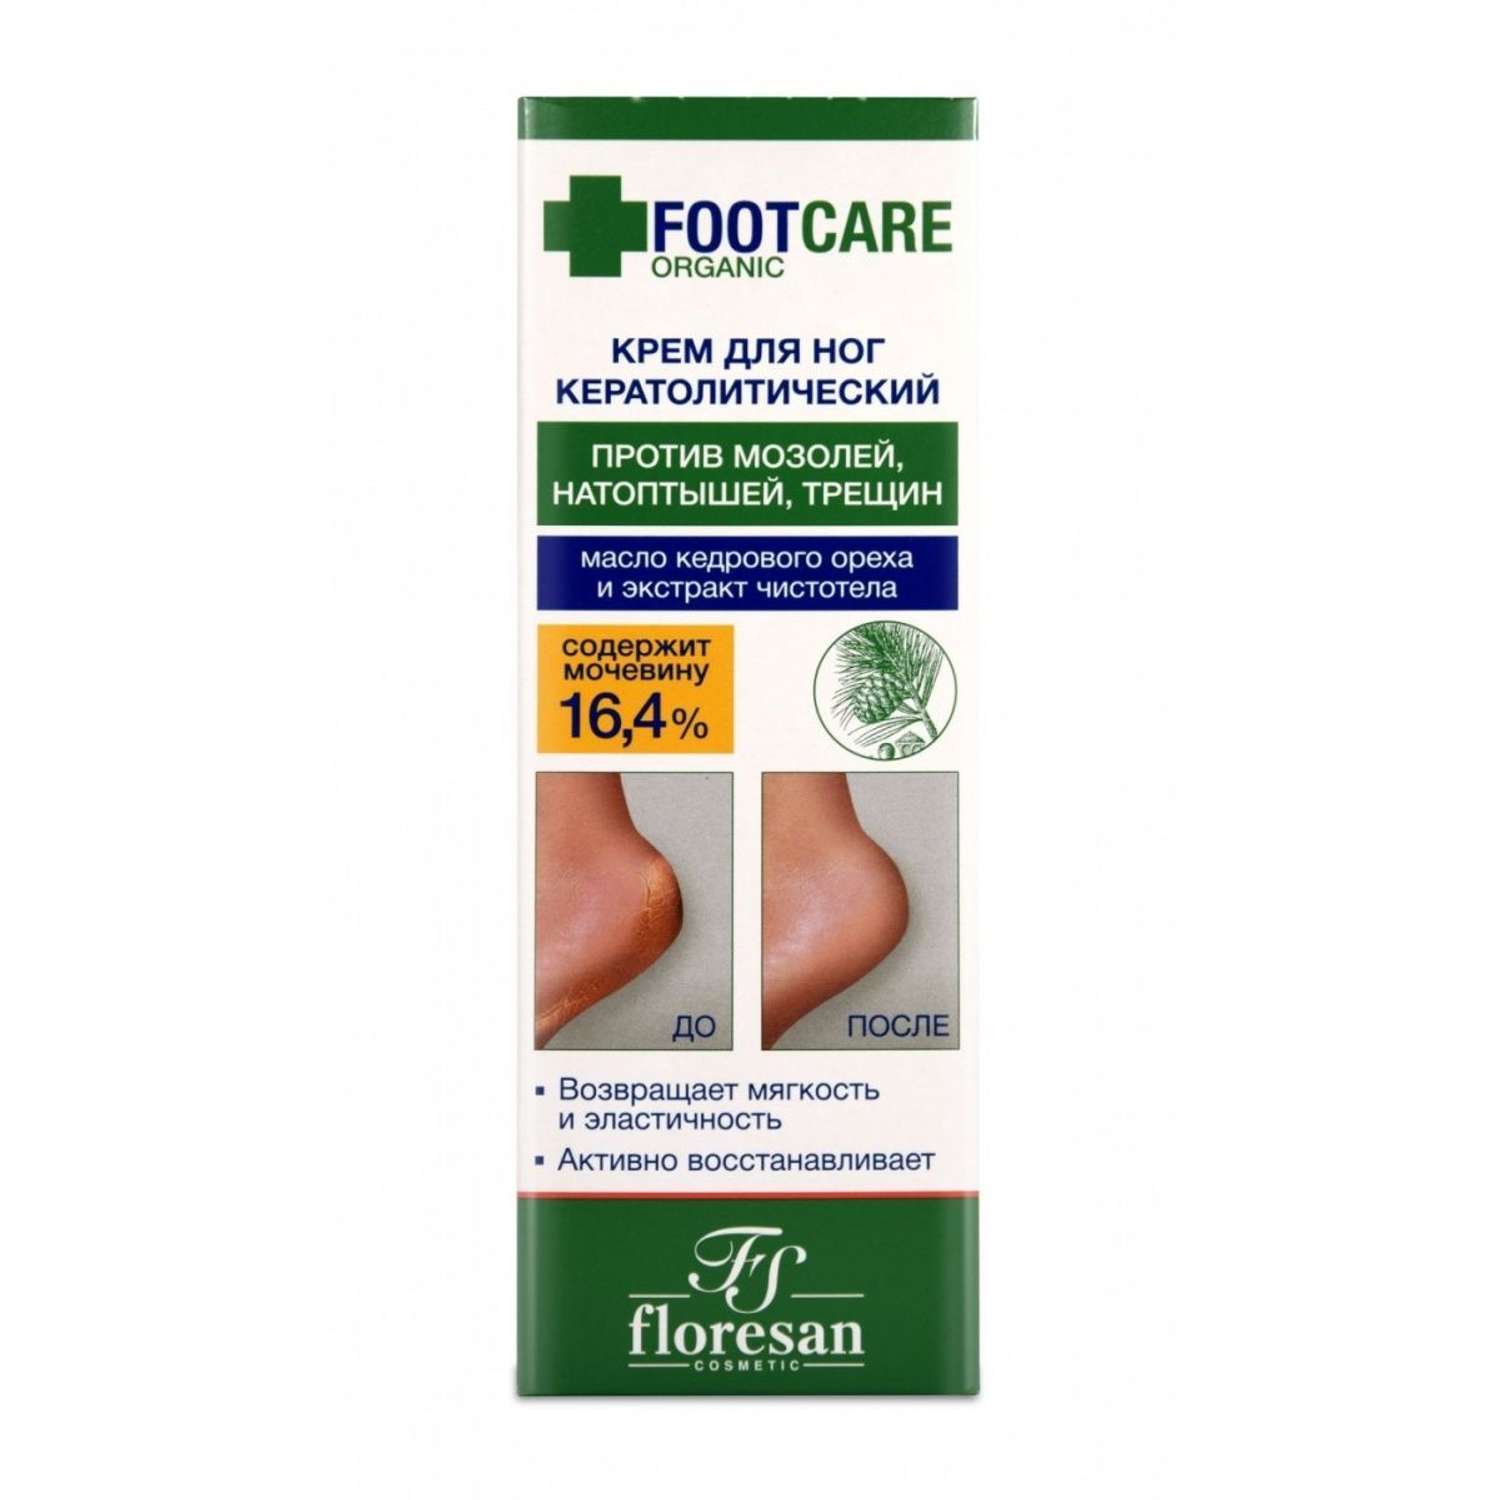 Крем для ног floresan кератолитический против трещин и натоптышей серии Organic foot care 100мл - фото 4